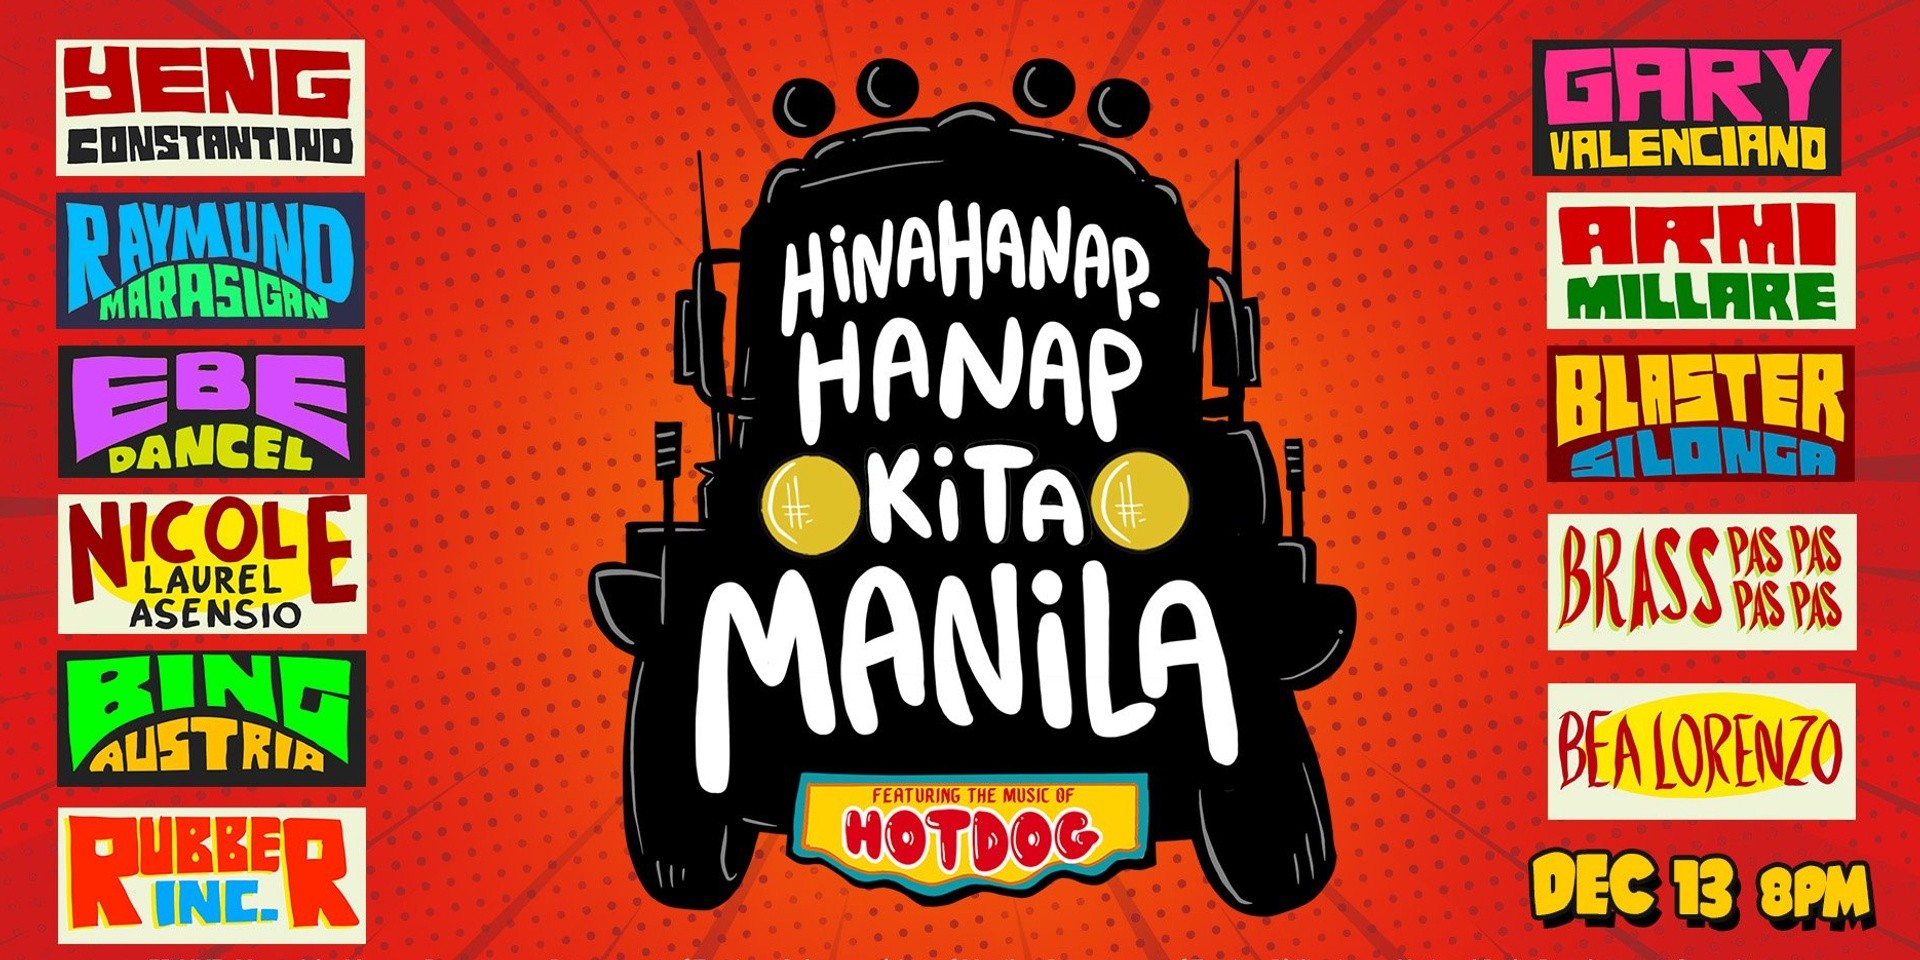 Armi Millare, Blaster Silonga, Gary Valenciano, Raymund Marasigan, Ebe Dancel, and more to pay tribute to Hotdog in Hinahanap-Hanap Kita Manila concert